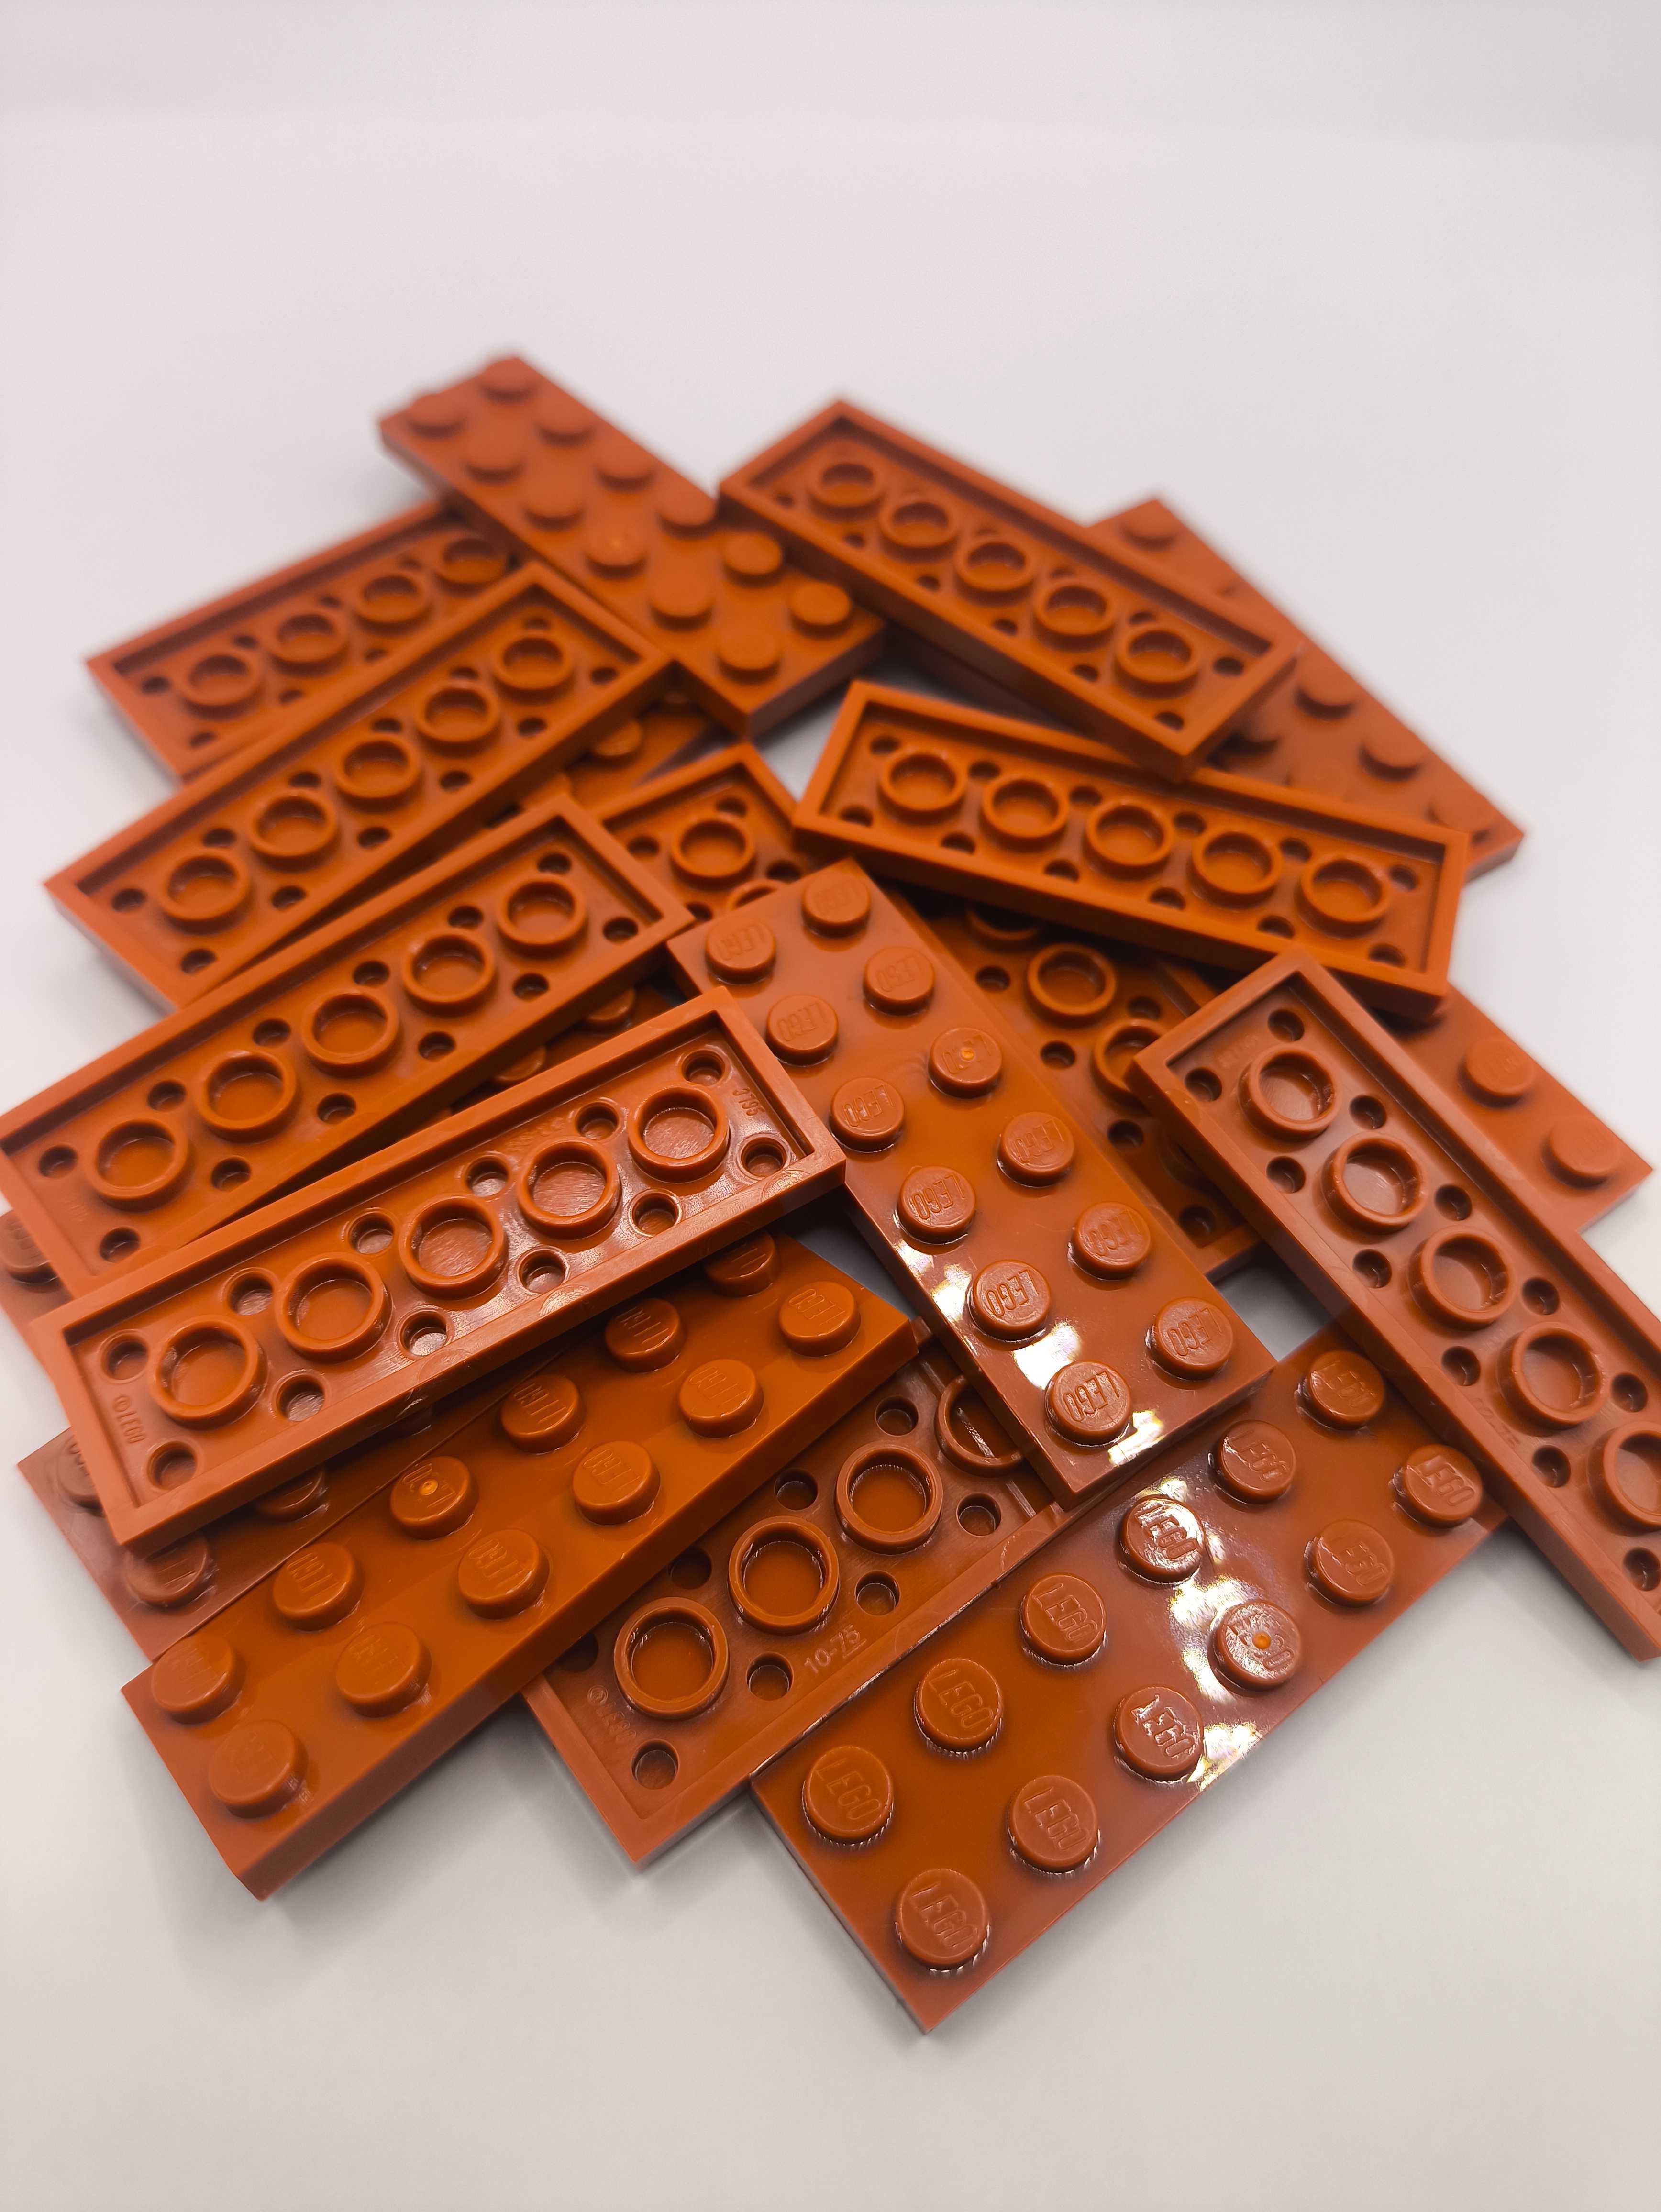 LEGO 3795 - plate 2x6 - 10szt